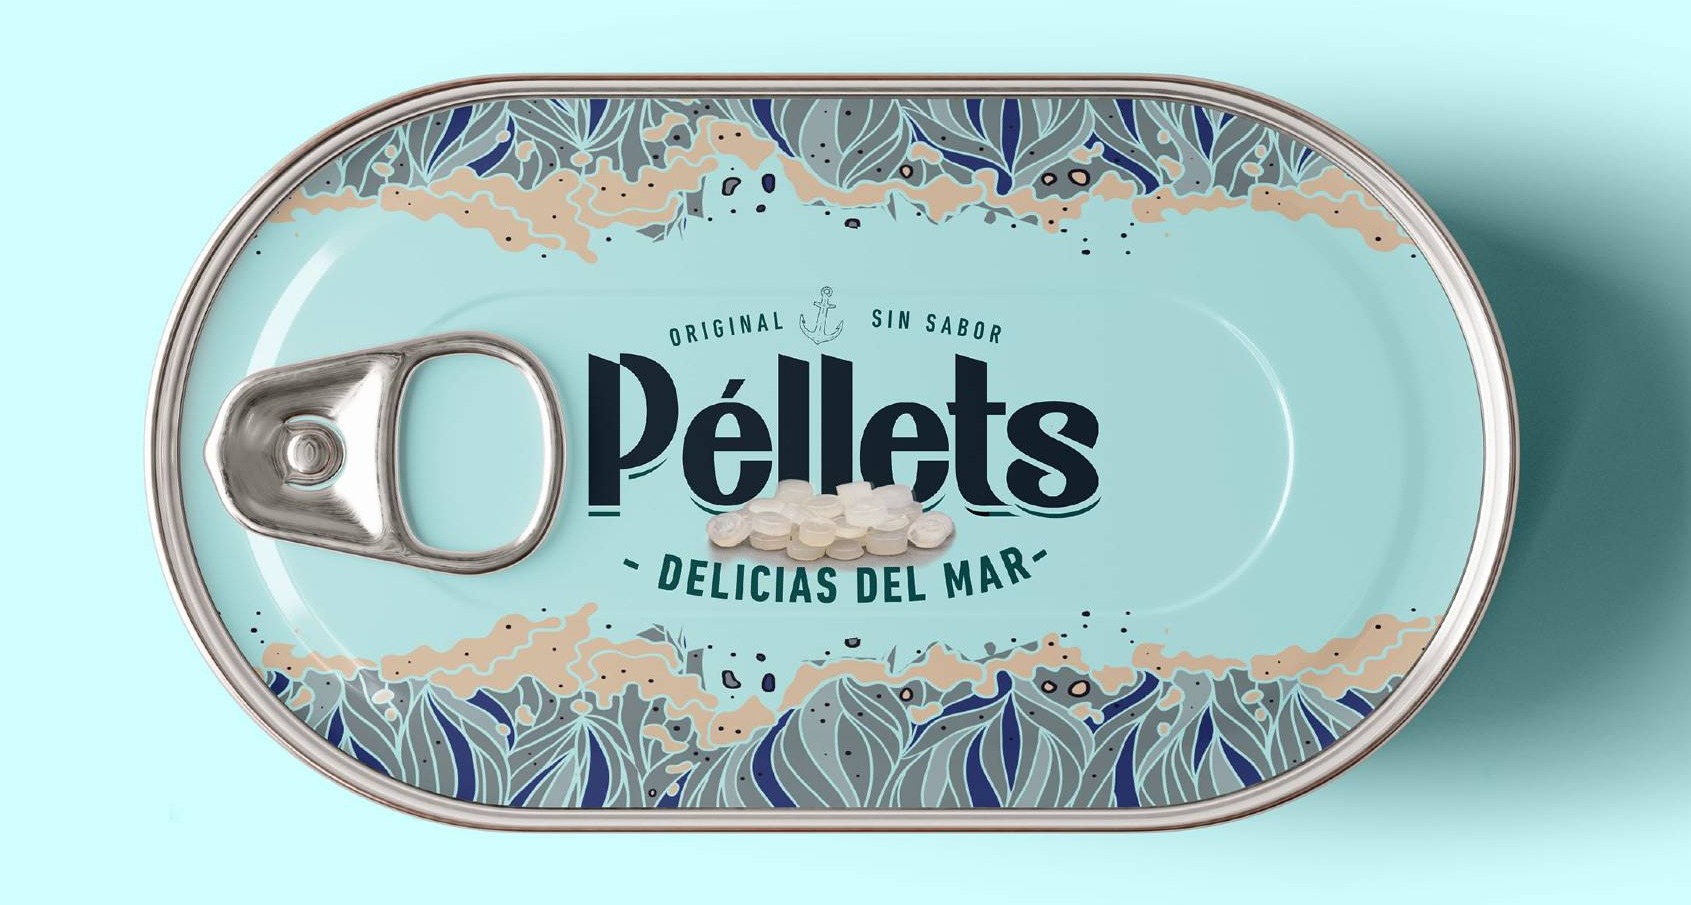 Campaña denuncia Chelonia-Pellets Delicias Mar